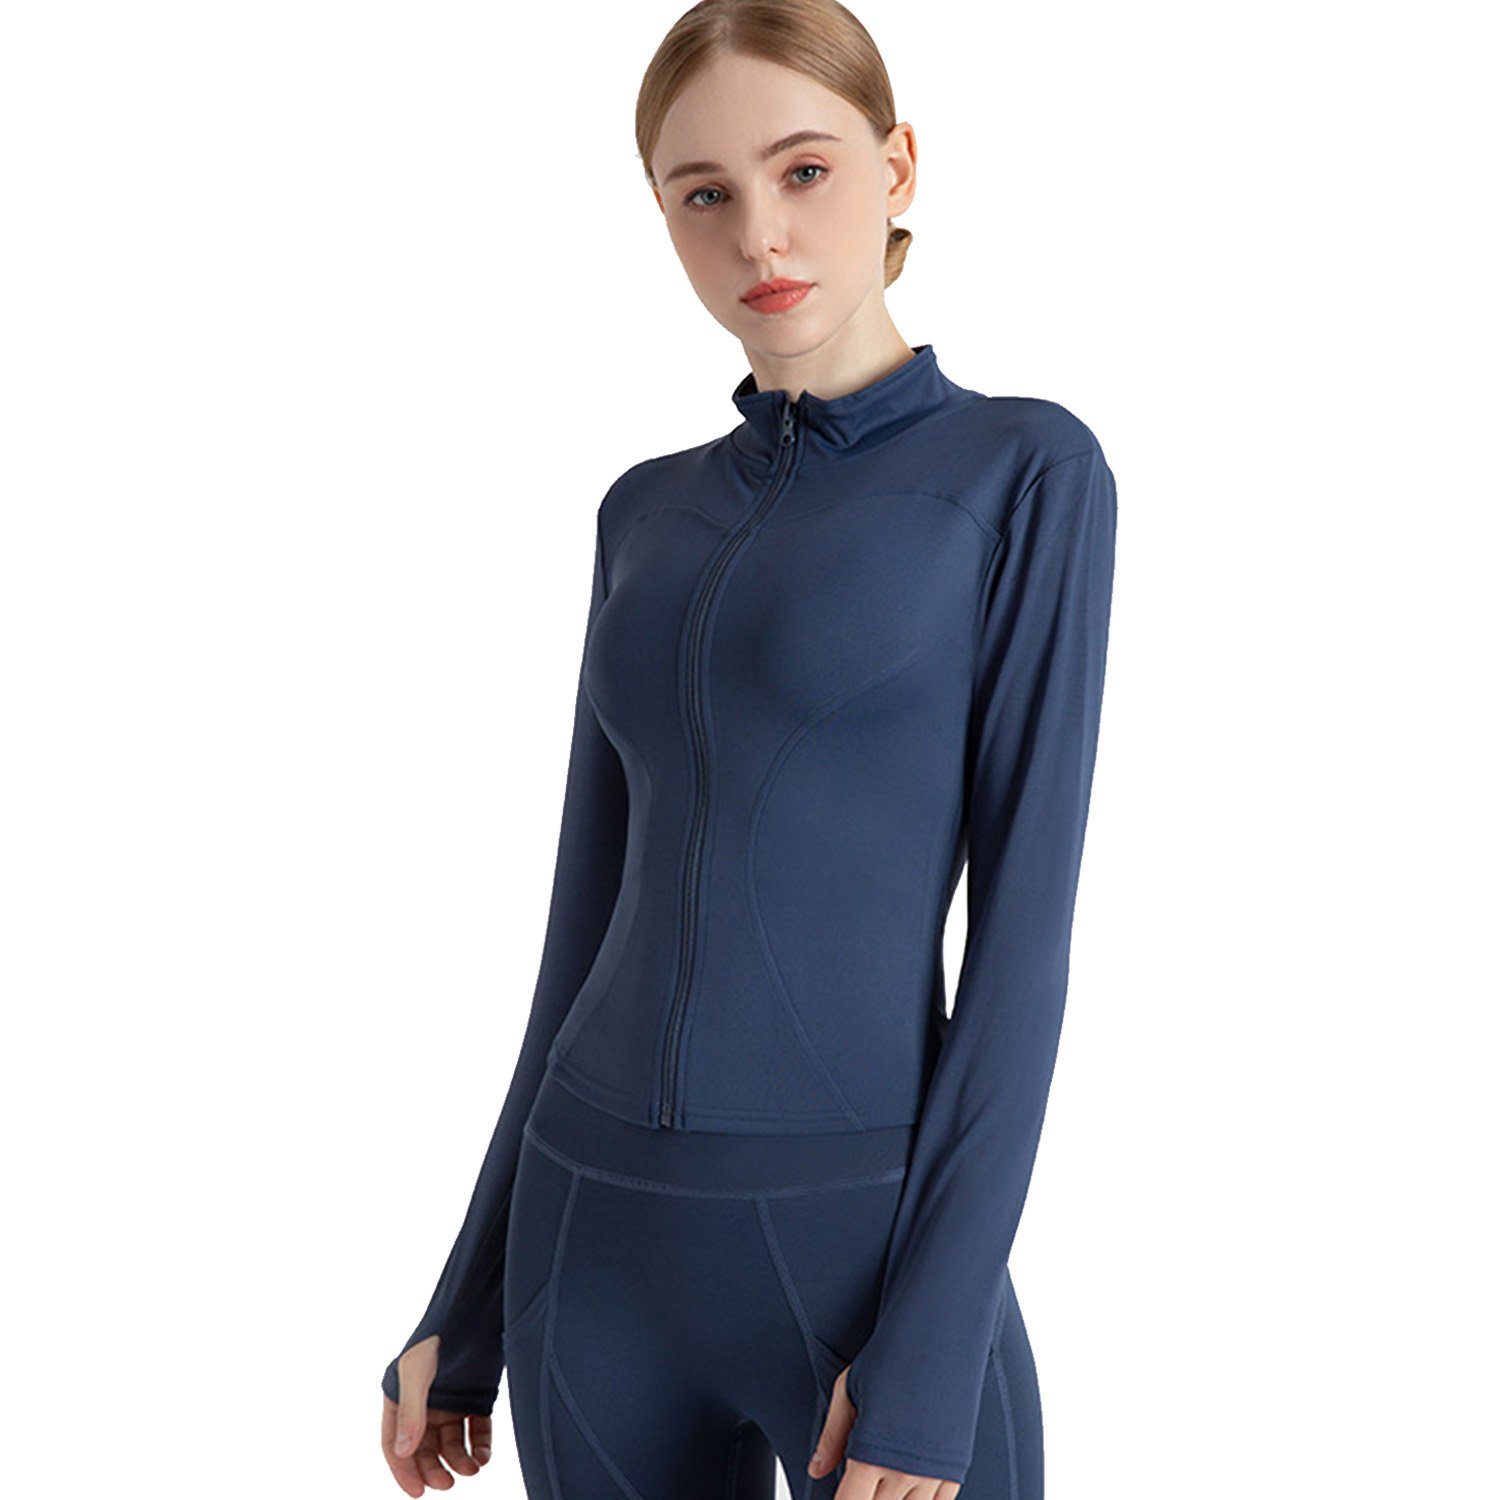 blau Sweatshirt, Fitness Sport MAGICSHE Stehkragen Reißverschluss Damen Top T-Shirt Top mit und Leichtes Funktionsshirt